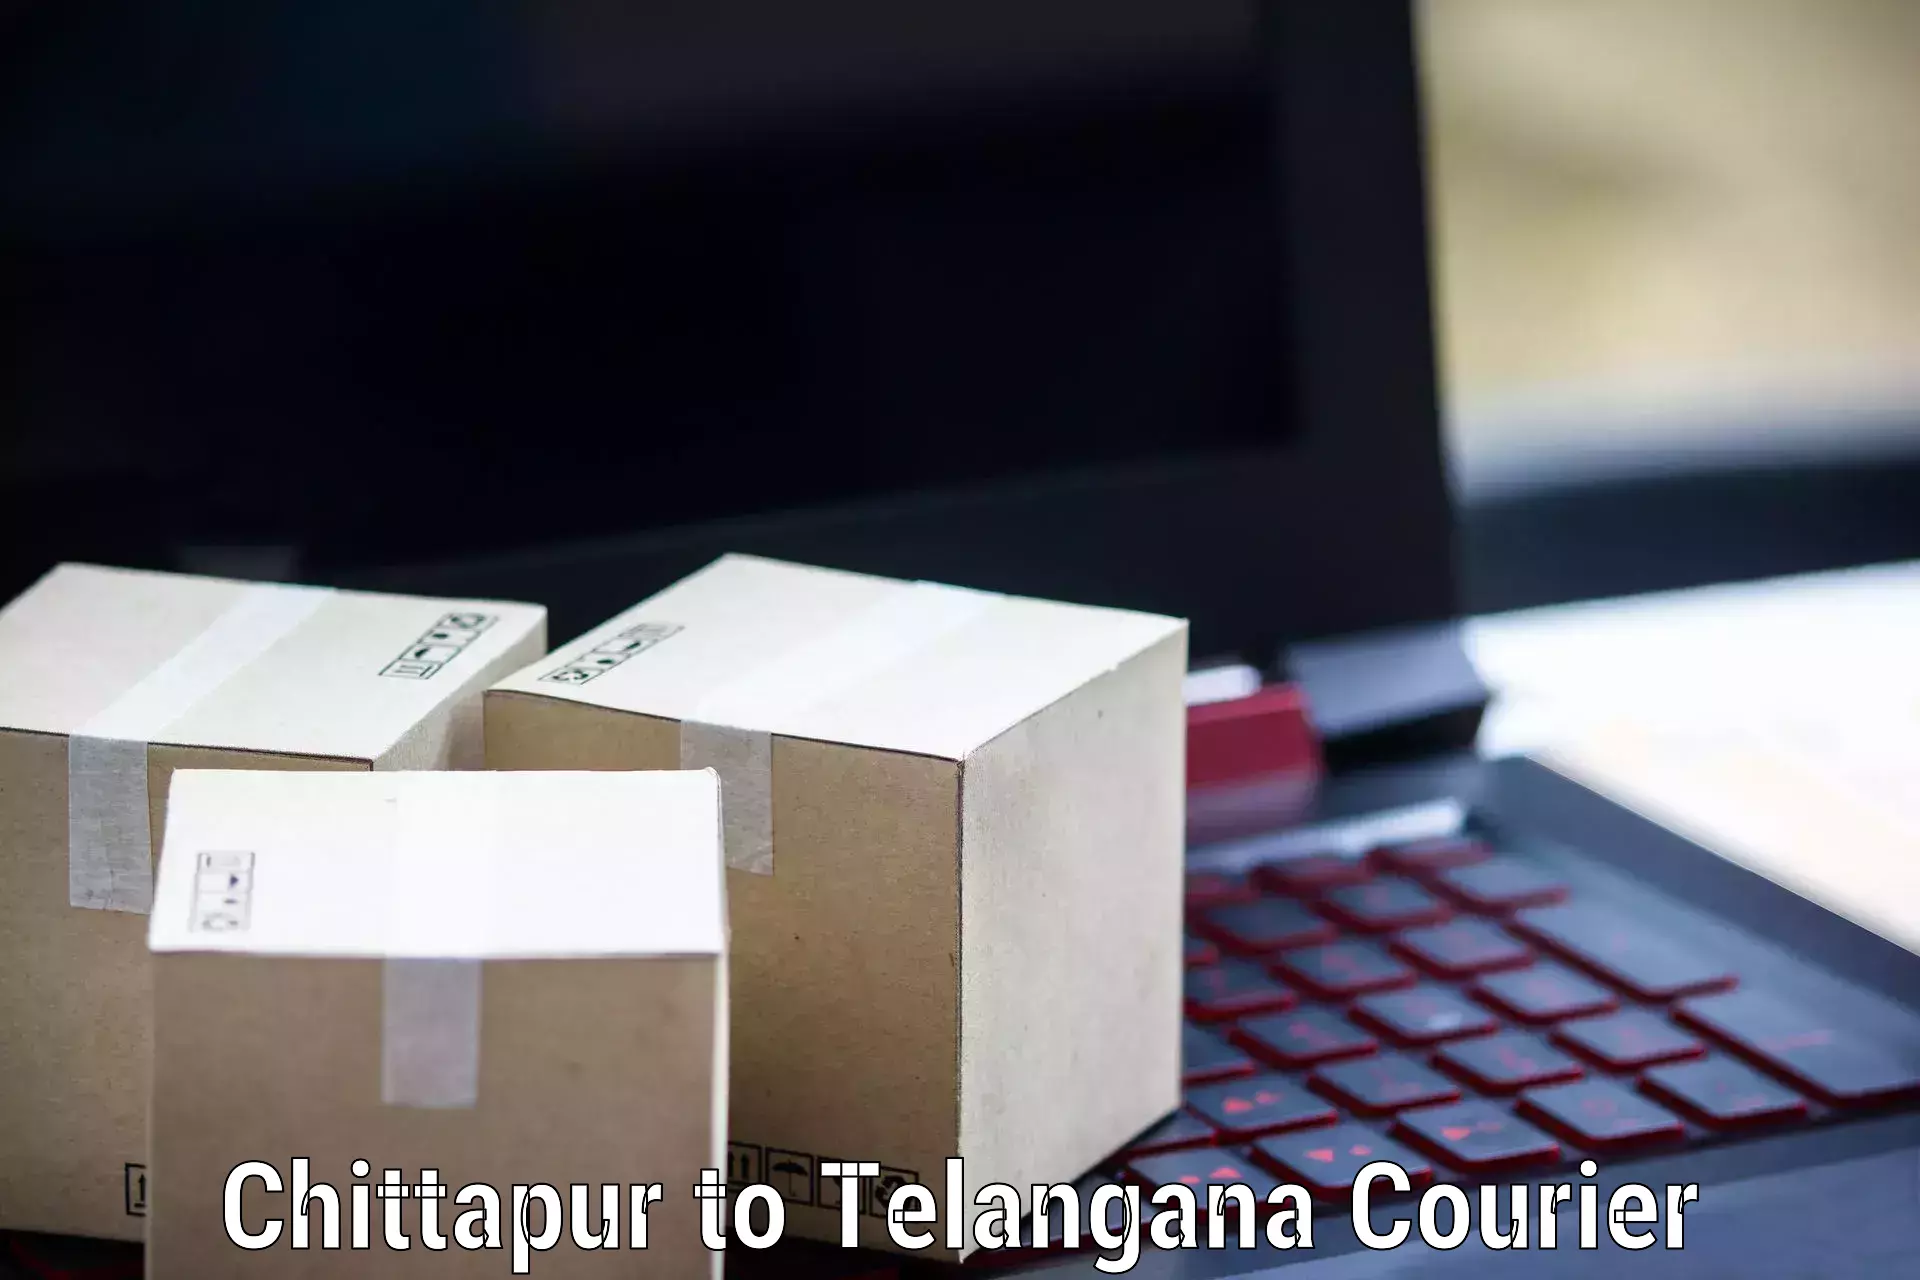 Digital courier platforms Chittapur to Bhongir